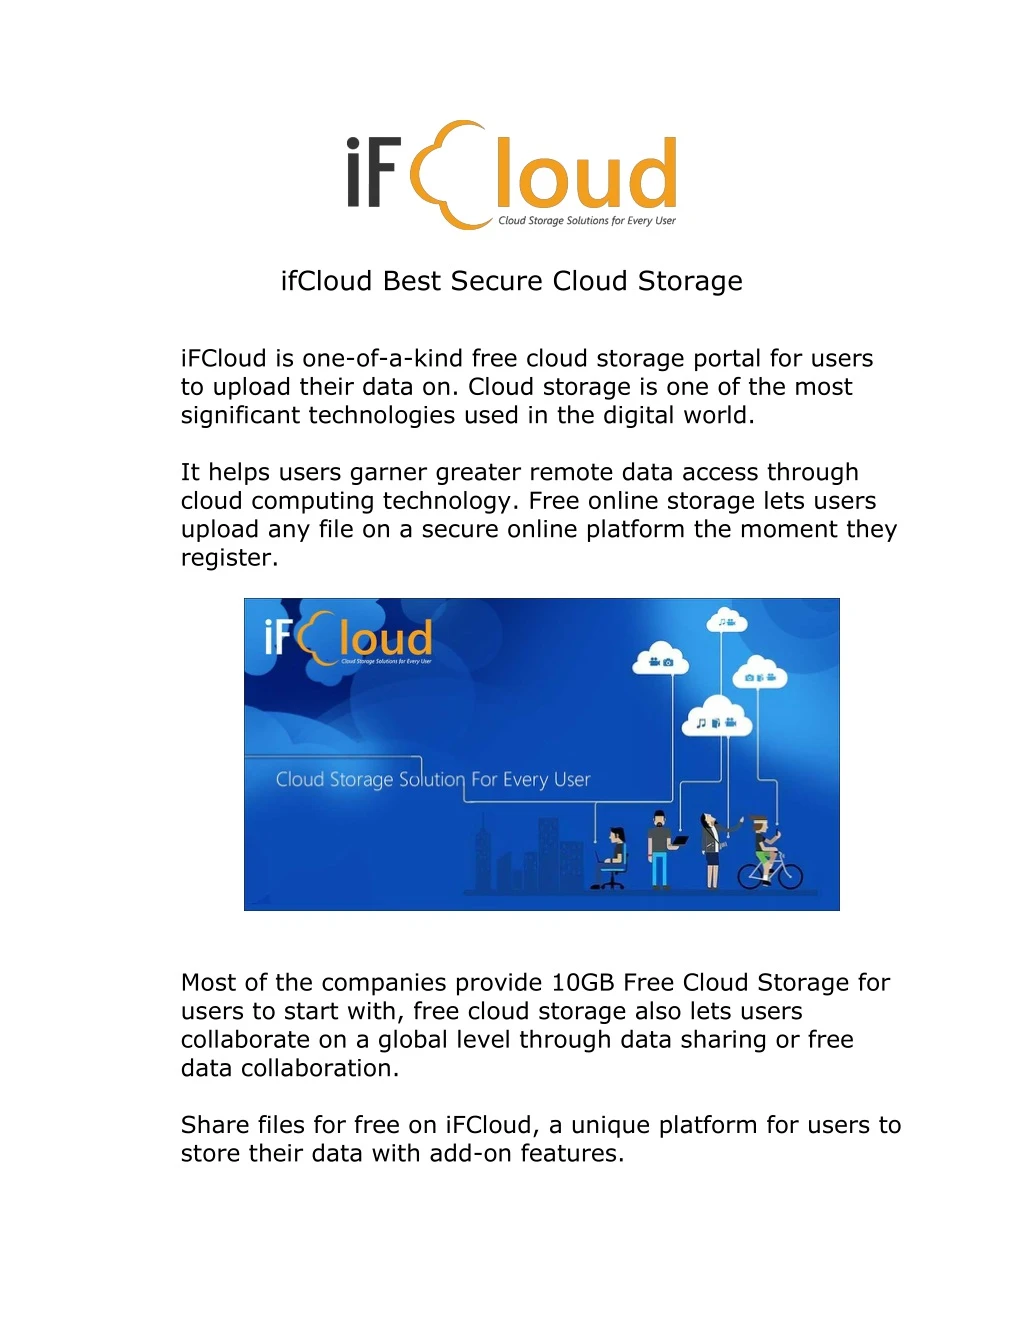 ifcloud best secure cloud storage